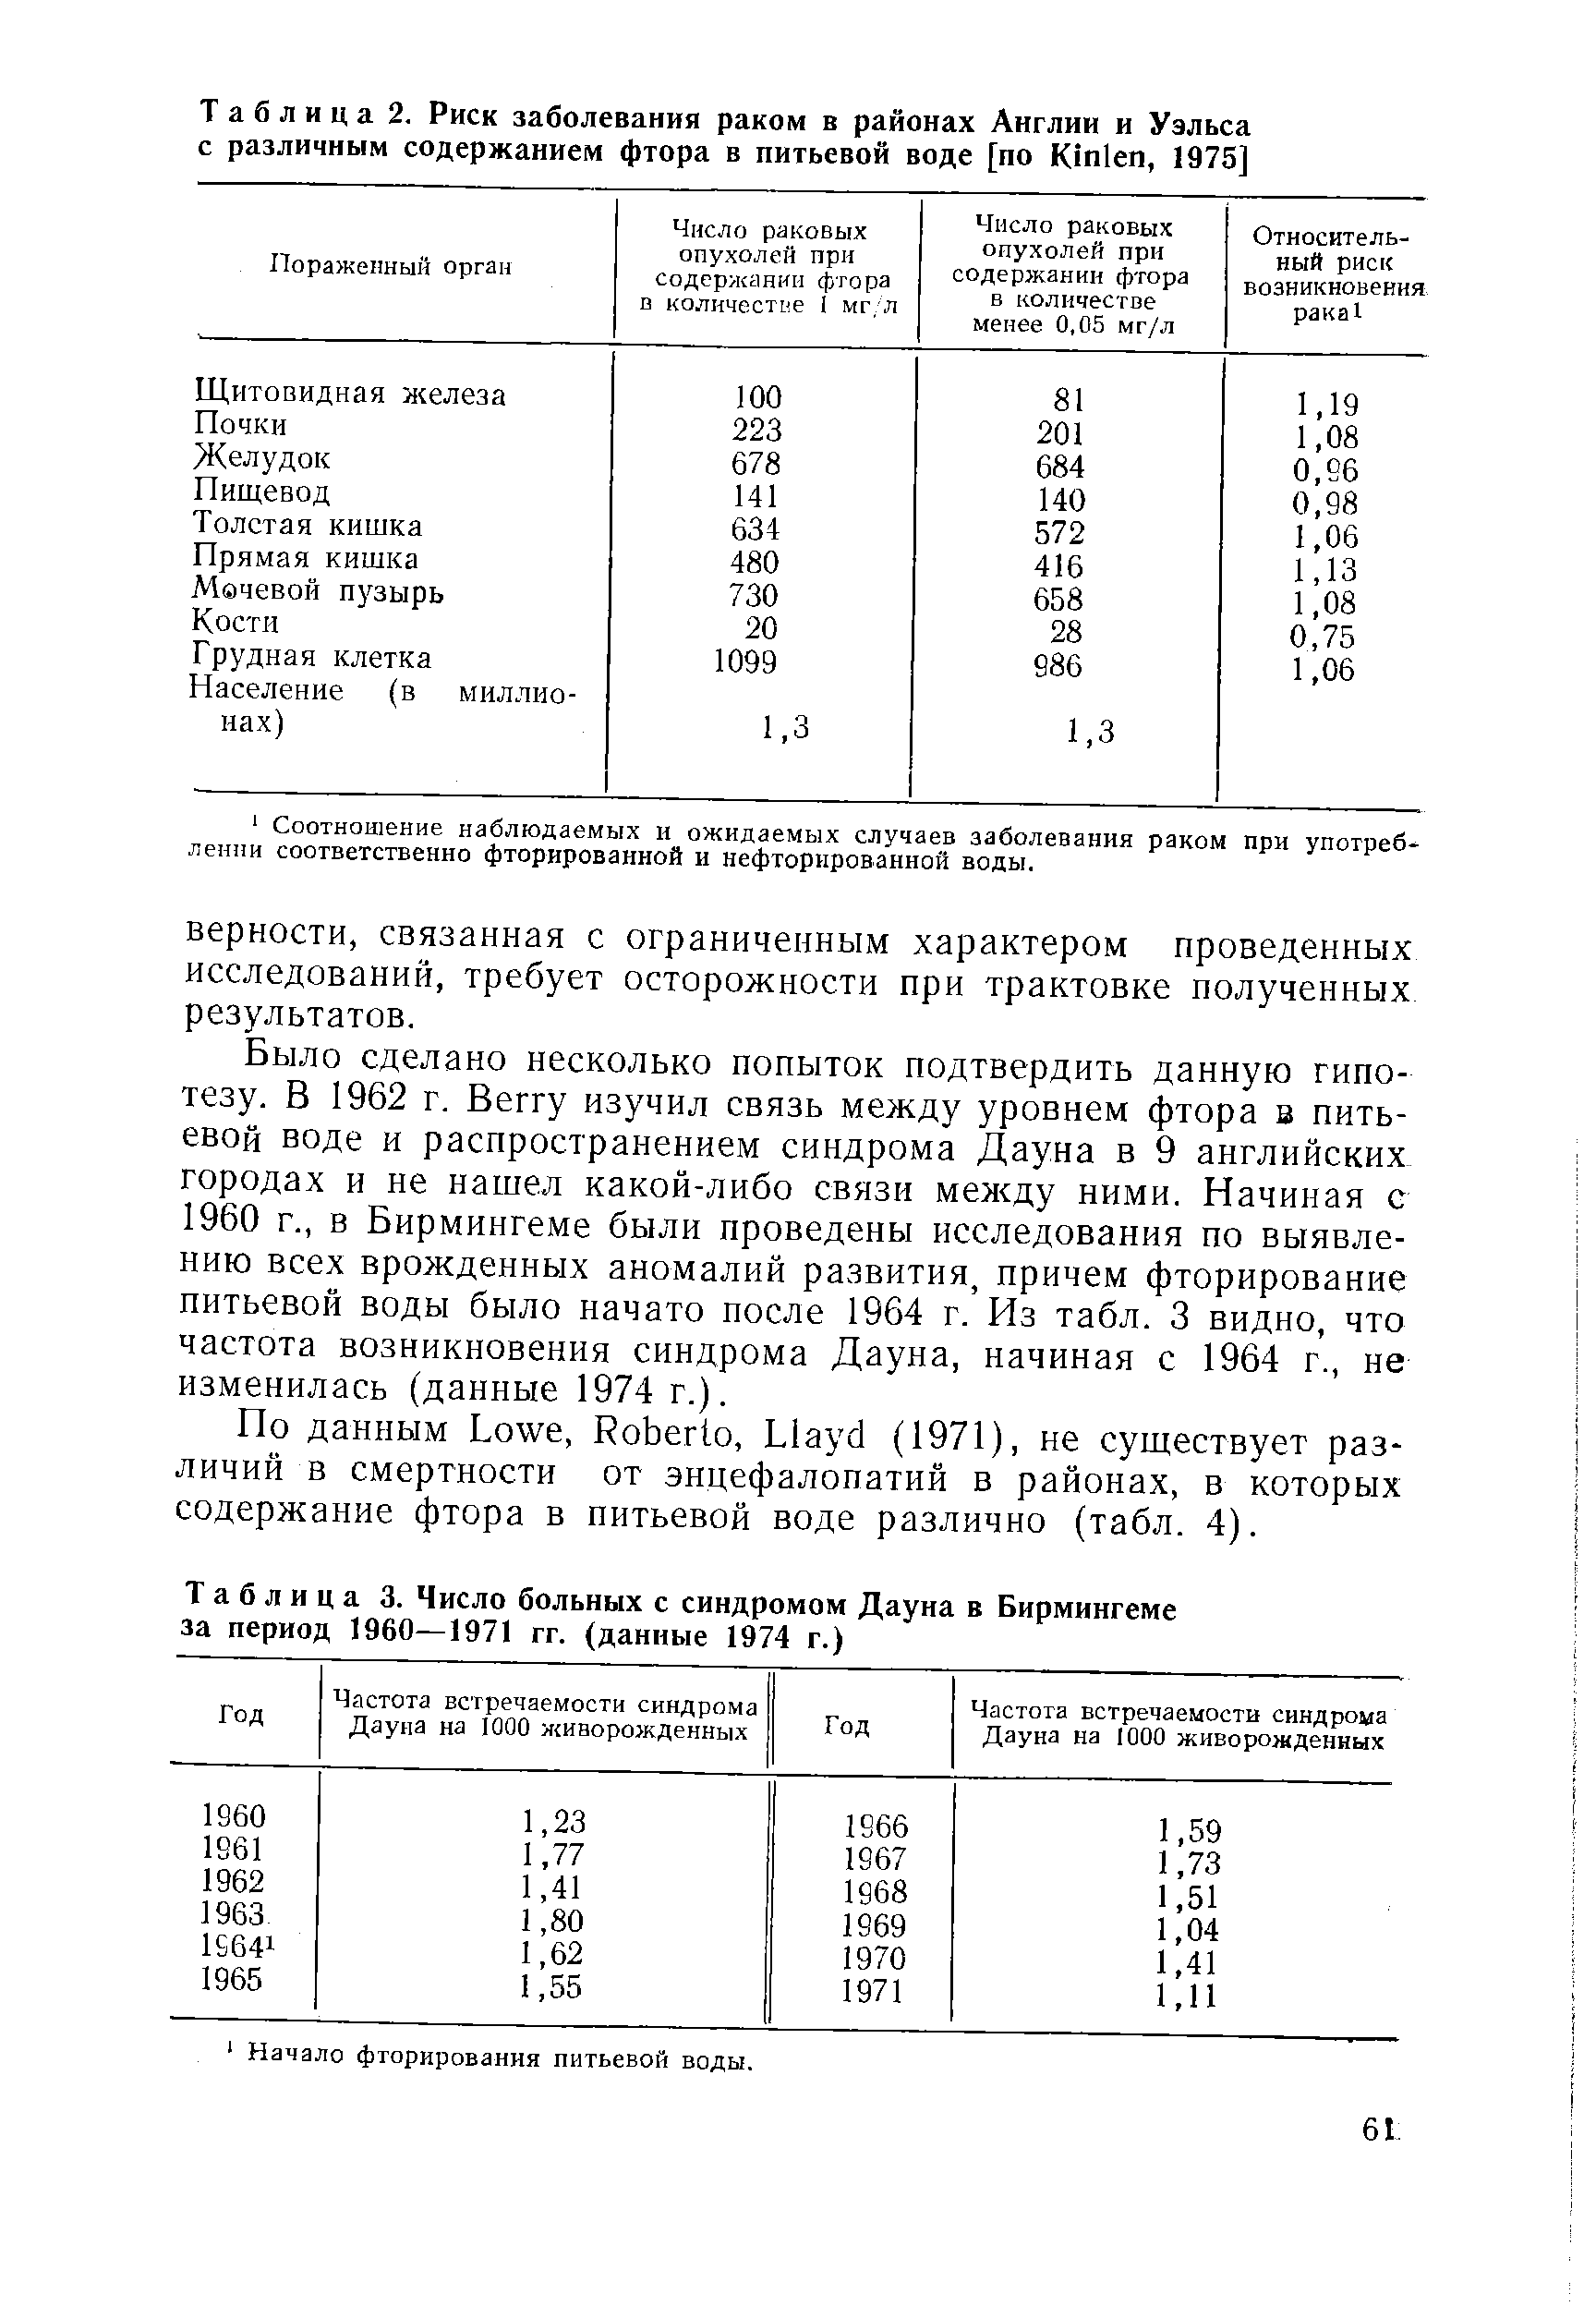 Таблица 3. Число больных с синдромом Дауна в Бирмингеме за период 1960—1971 гг. (данные 1974 г.)...